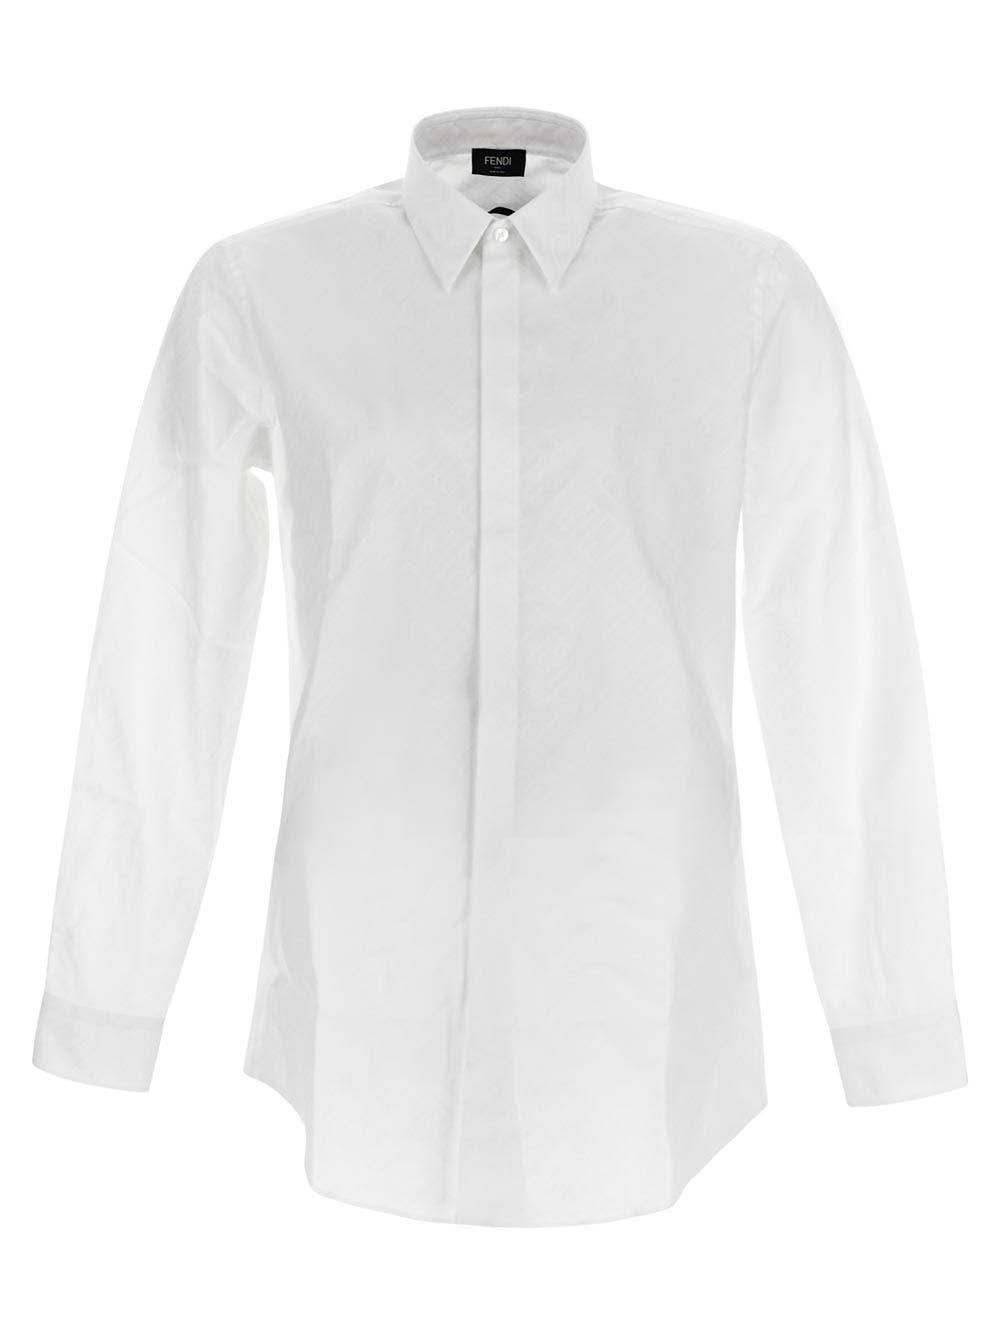 Fendi White Cotton Shirt